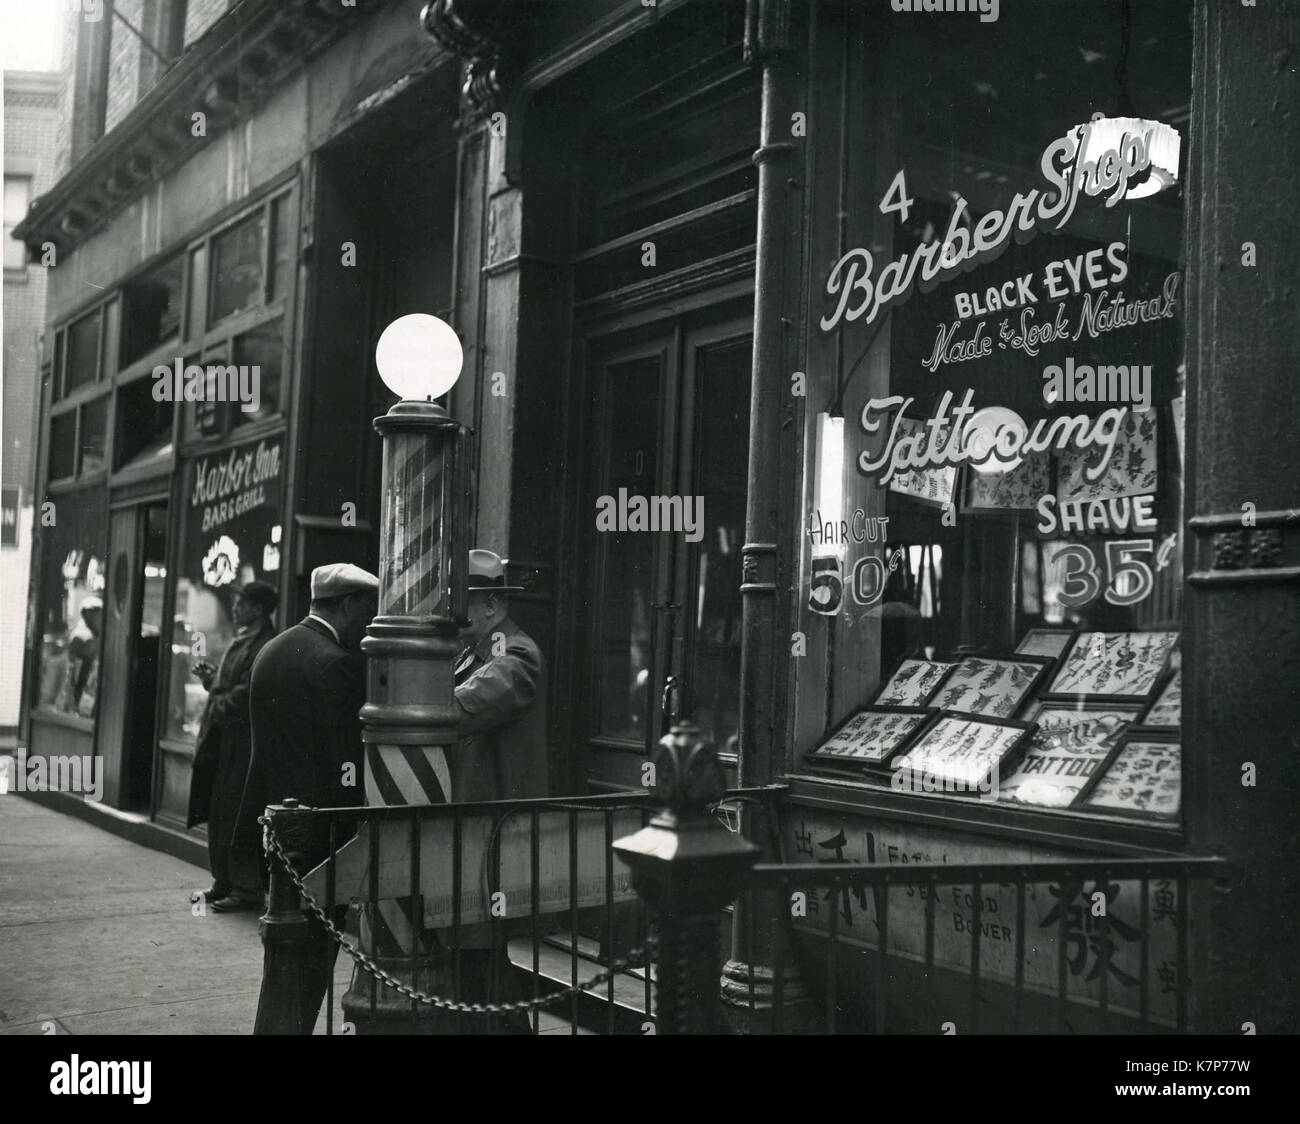 New York, 1952 - ein Friseur auf der Bowery, einer Straße am unteren Ende der Insel Manhattan. Dieser Shop ist spezialisiert auf Tätowierungen und "schwarze Augen gemacht, um natürlich zu schauen." Stockfoto